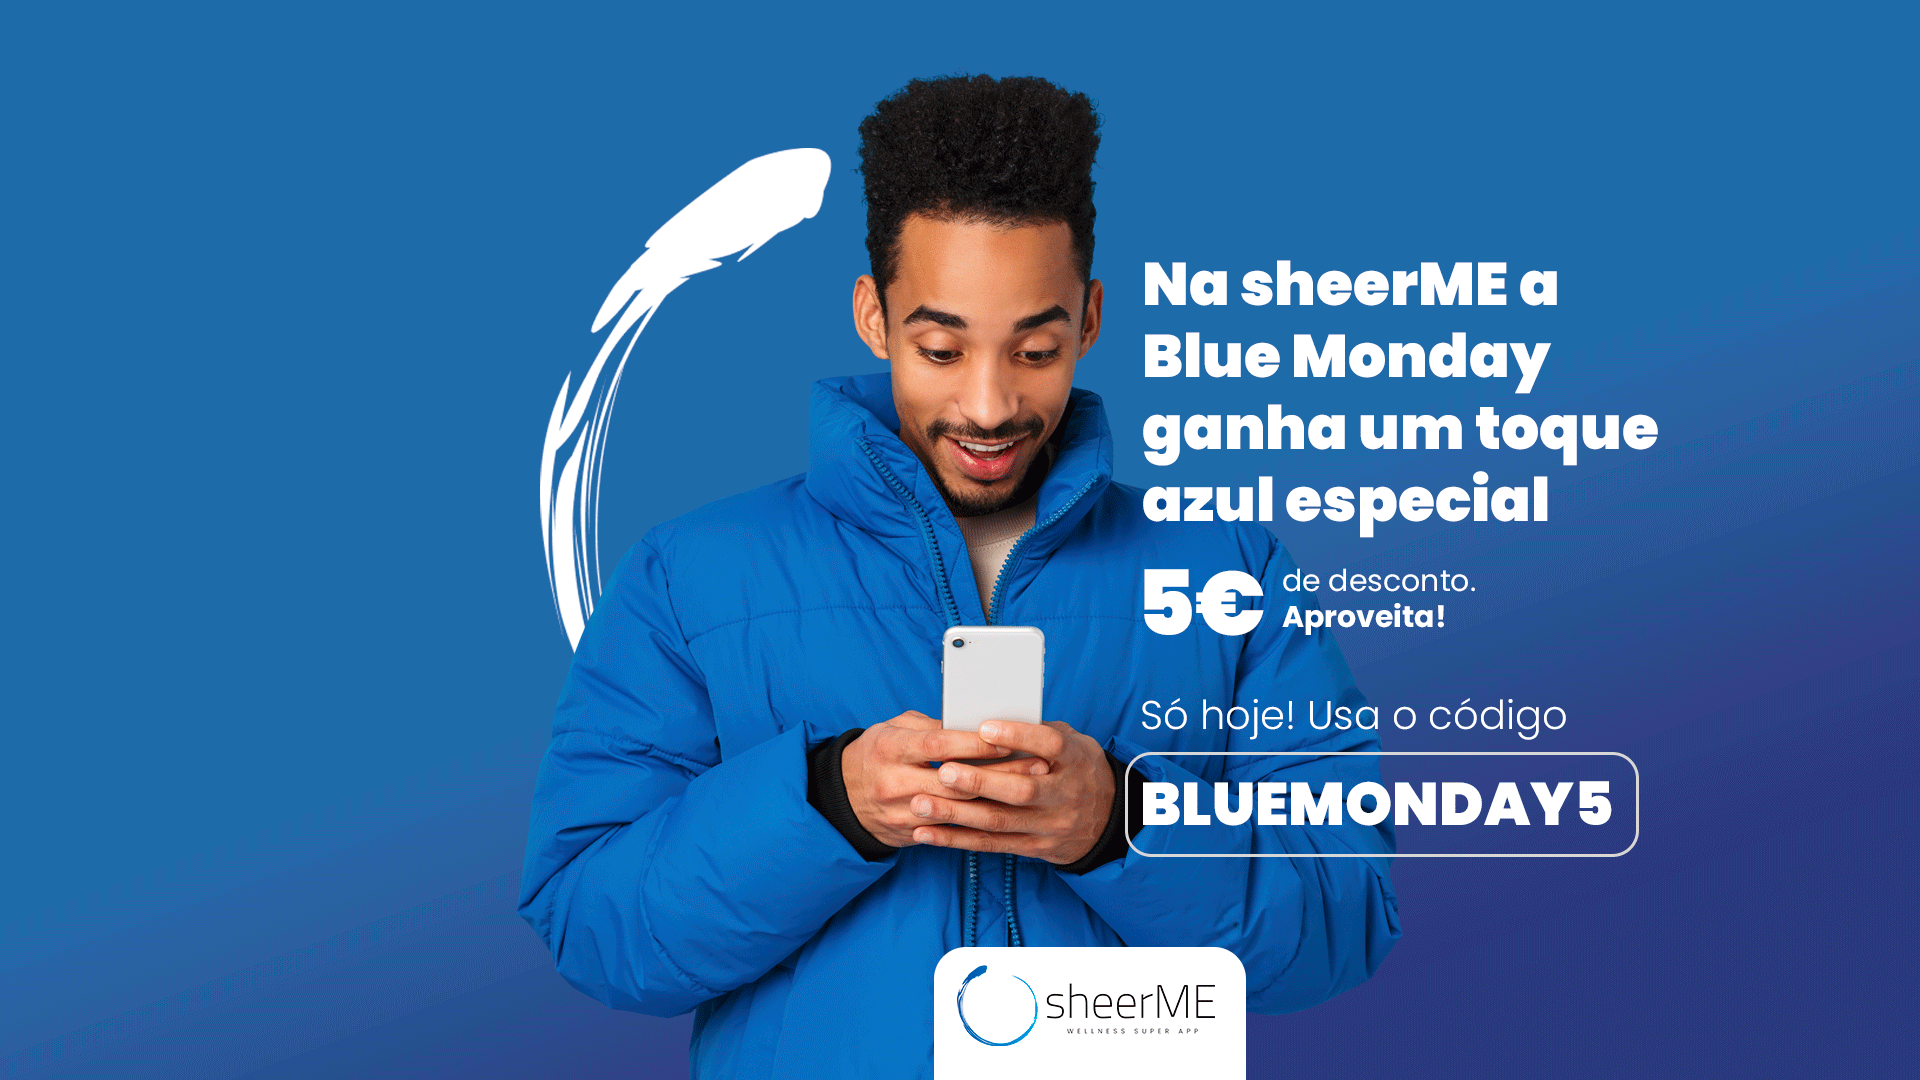 sheerME: Onde a Blue Monday ganha um toque azul especial - 5€ de desconto! 💙✨